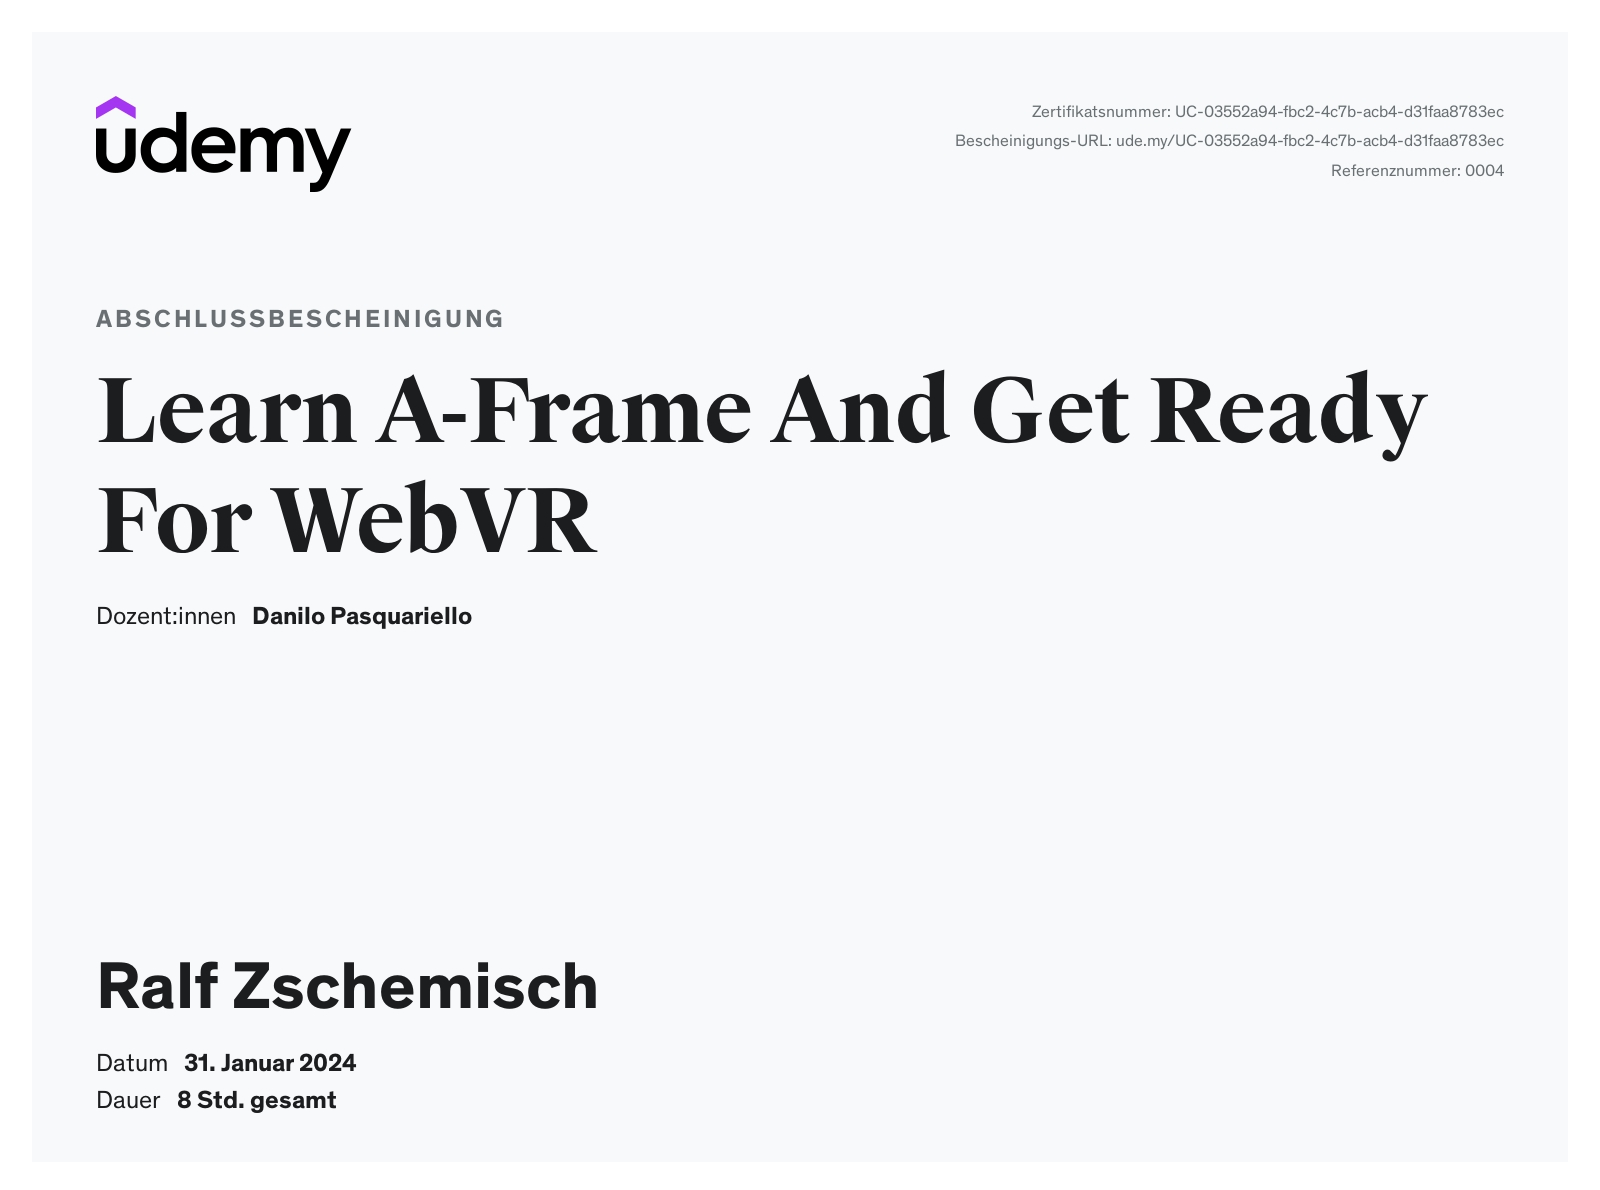 Abschlussbescheinigung Learn A-Frame And Get Ready For WebVR